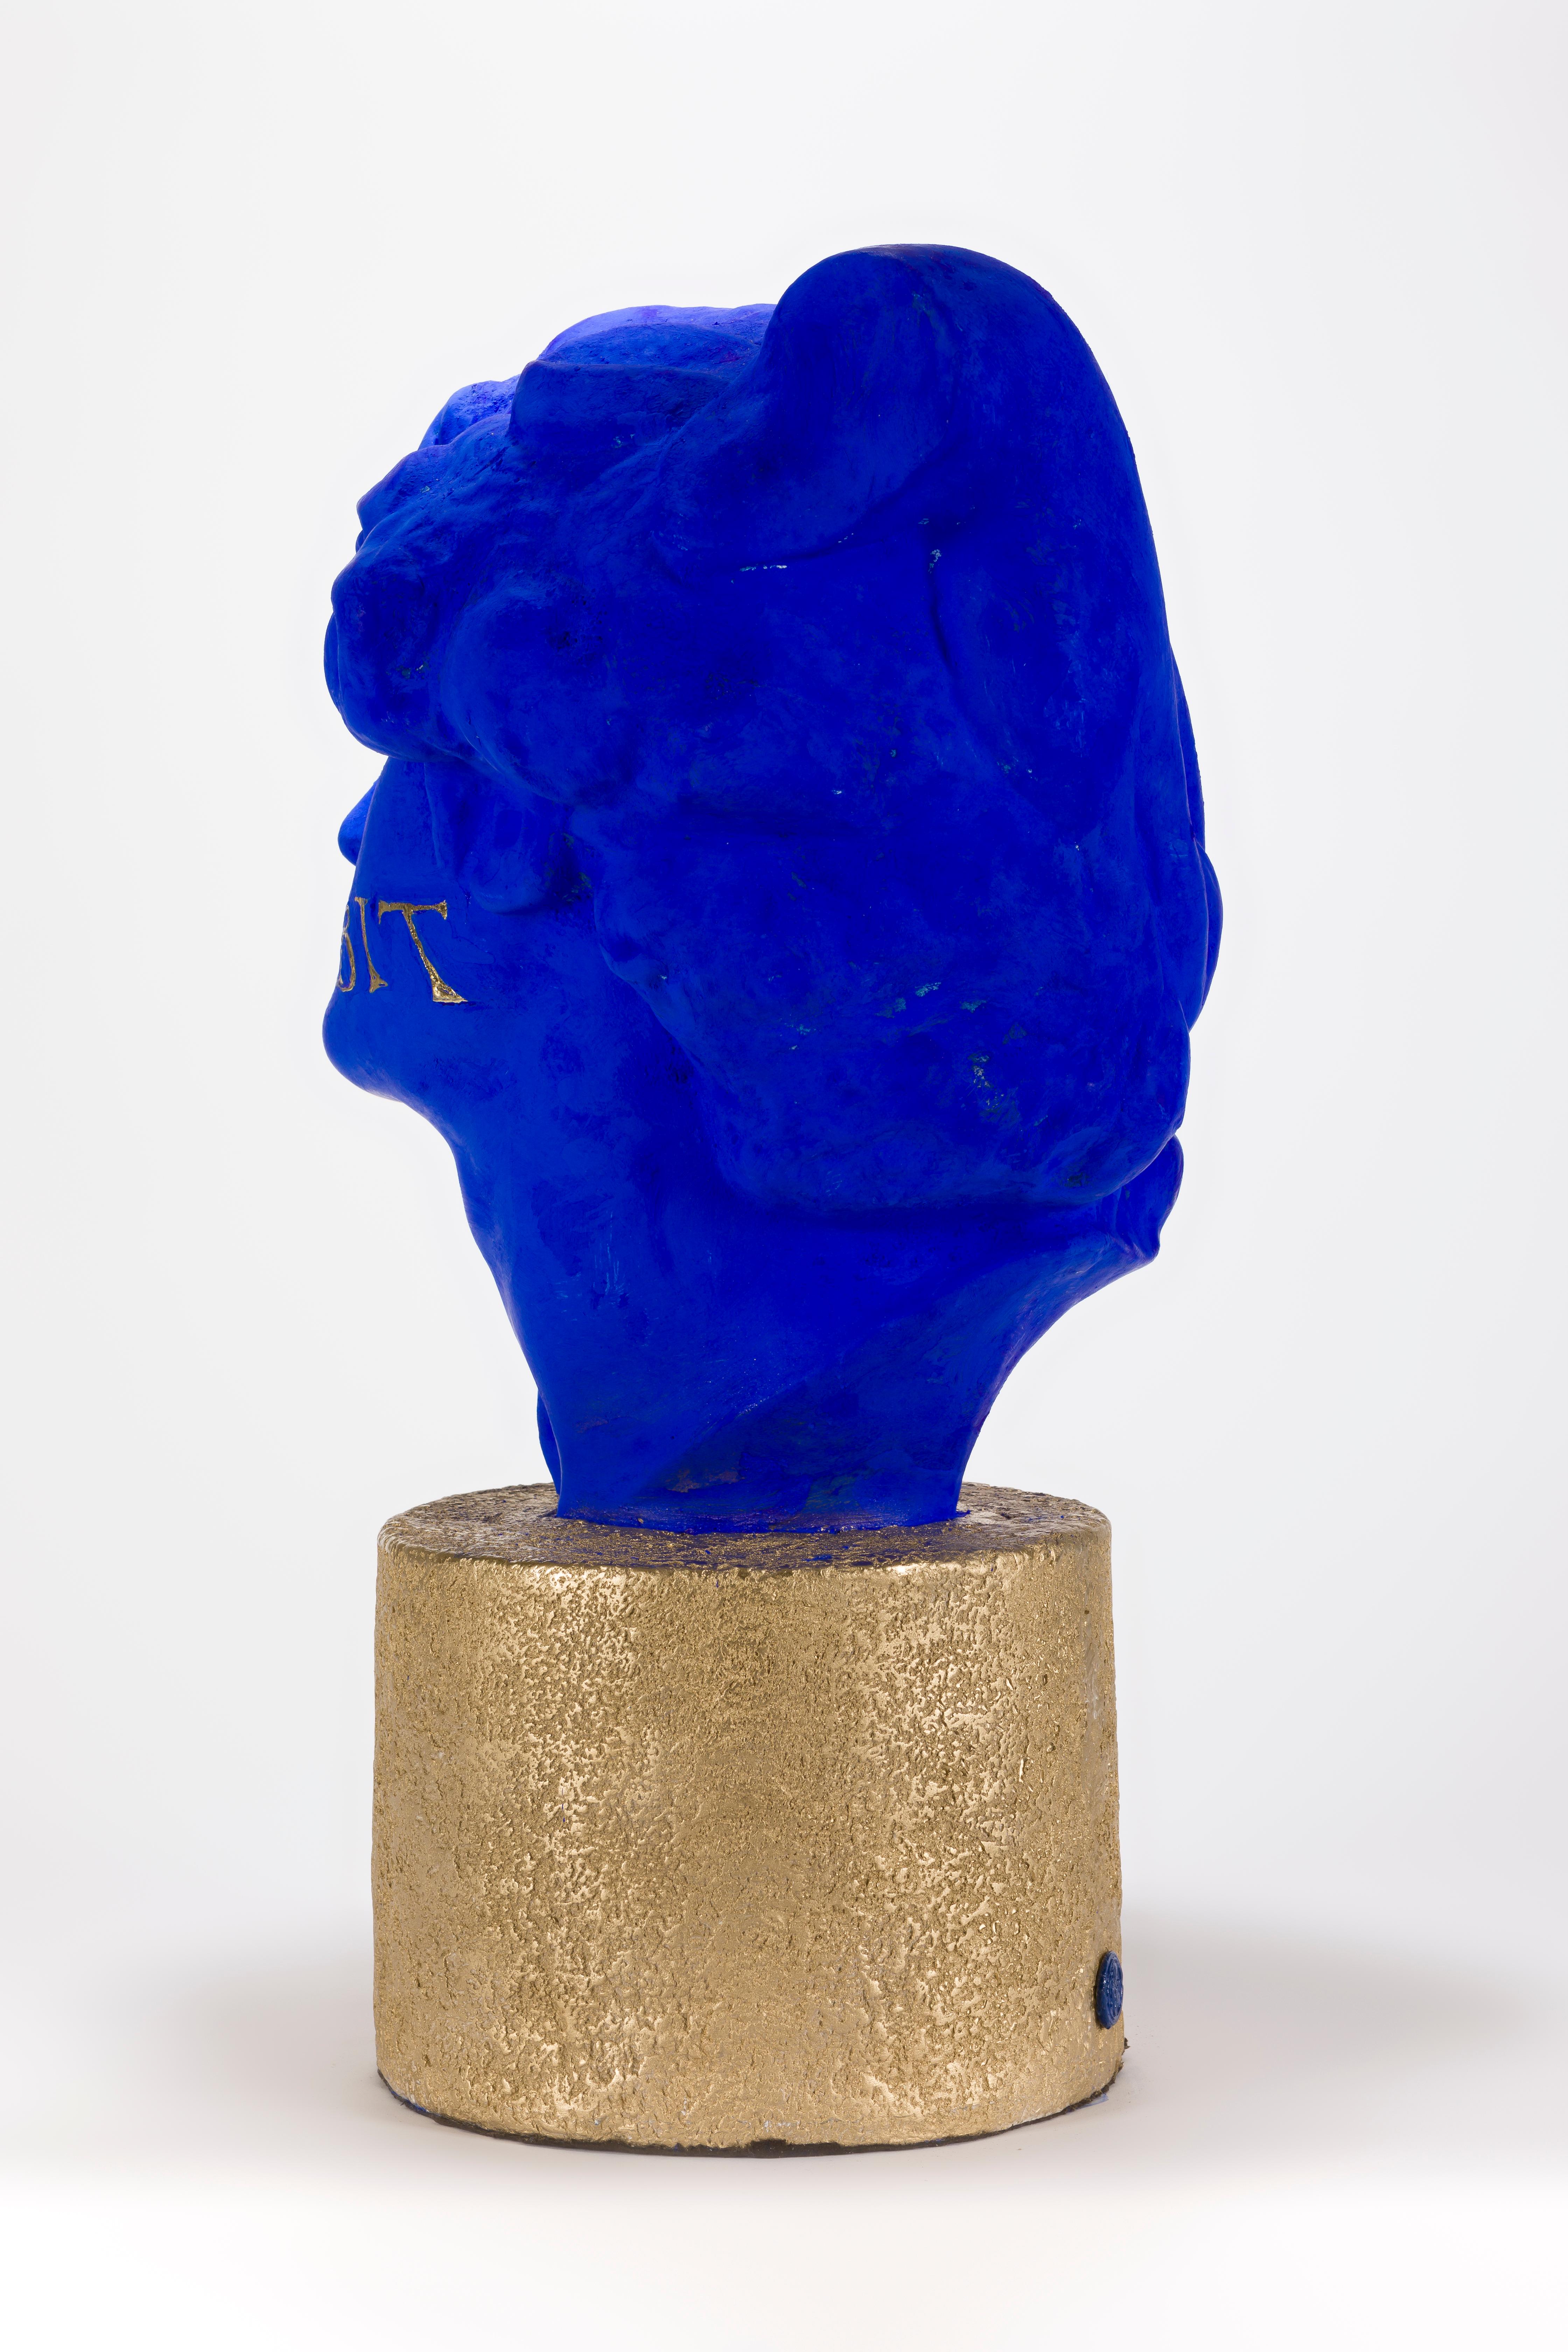 Scientia Vos Liberabit – Sculpture von Raphaël Jaimes-Branger